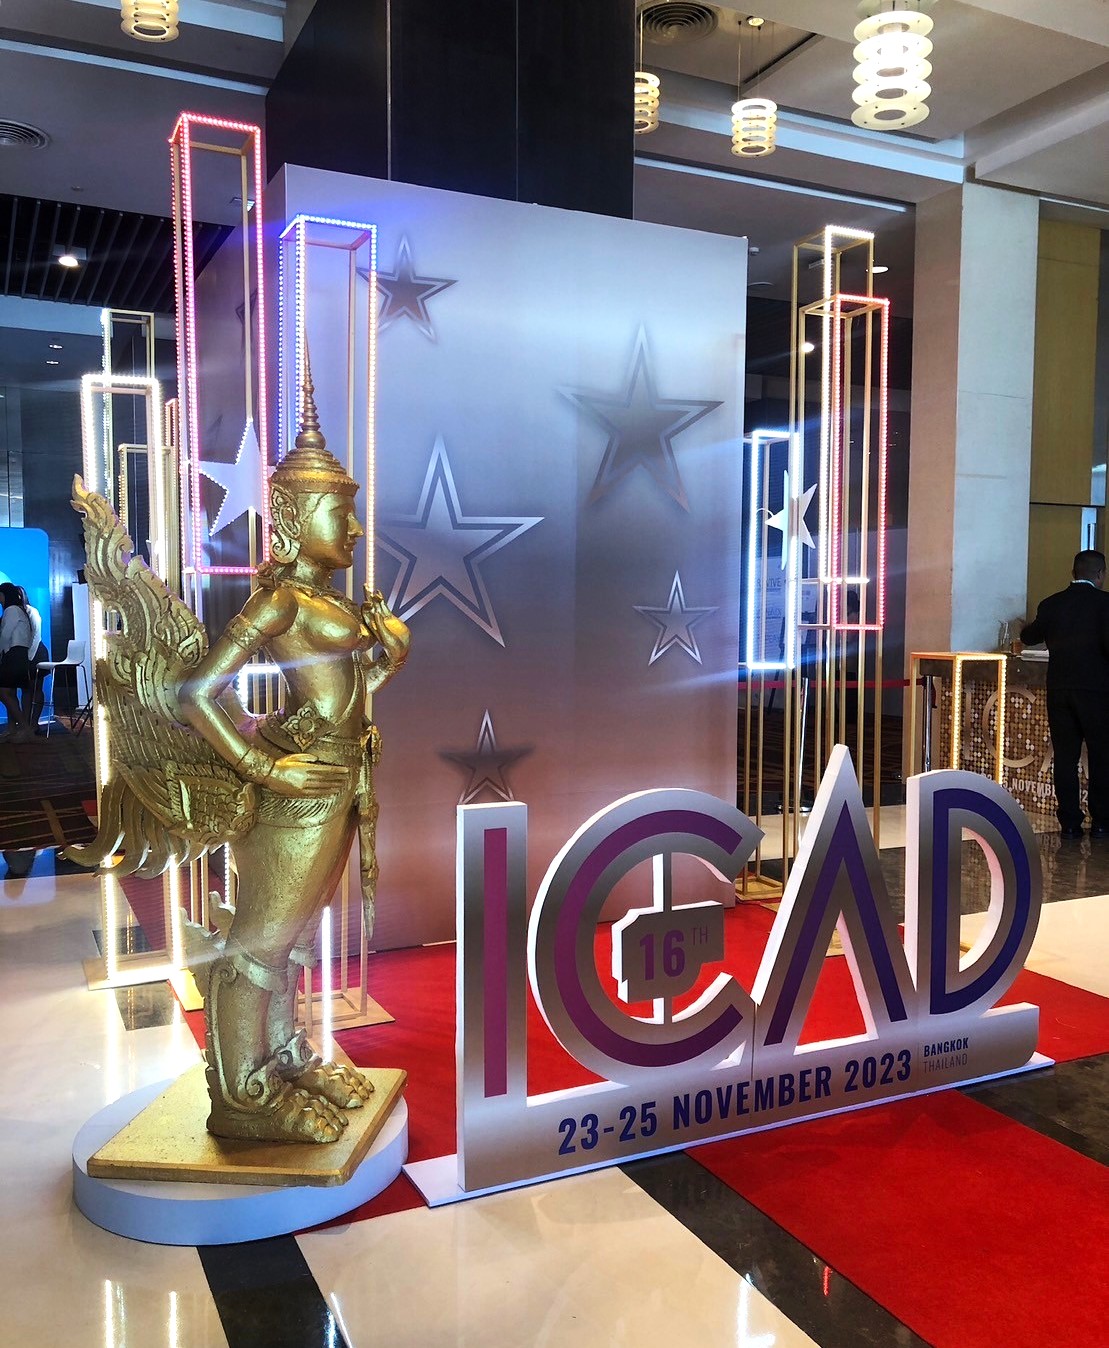 The ICAD Bangkok congress